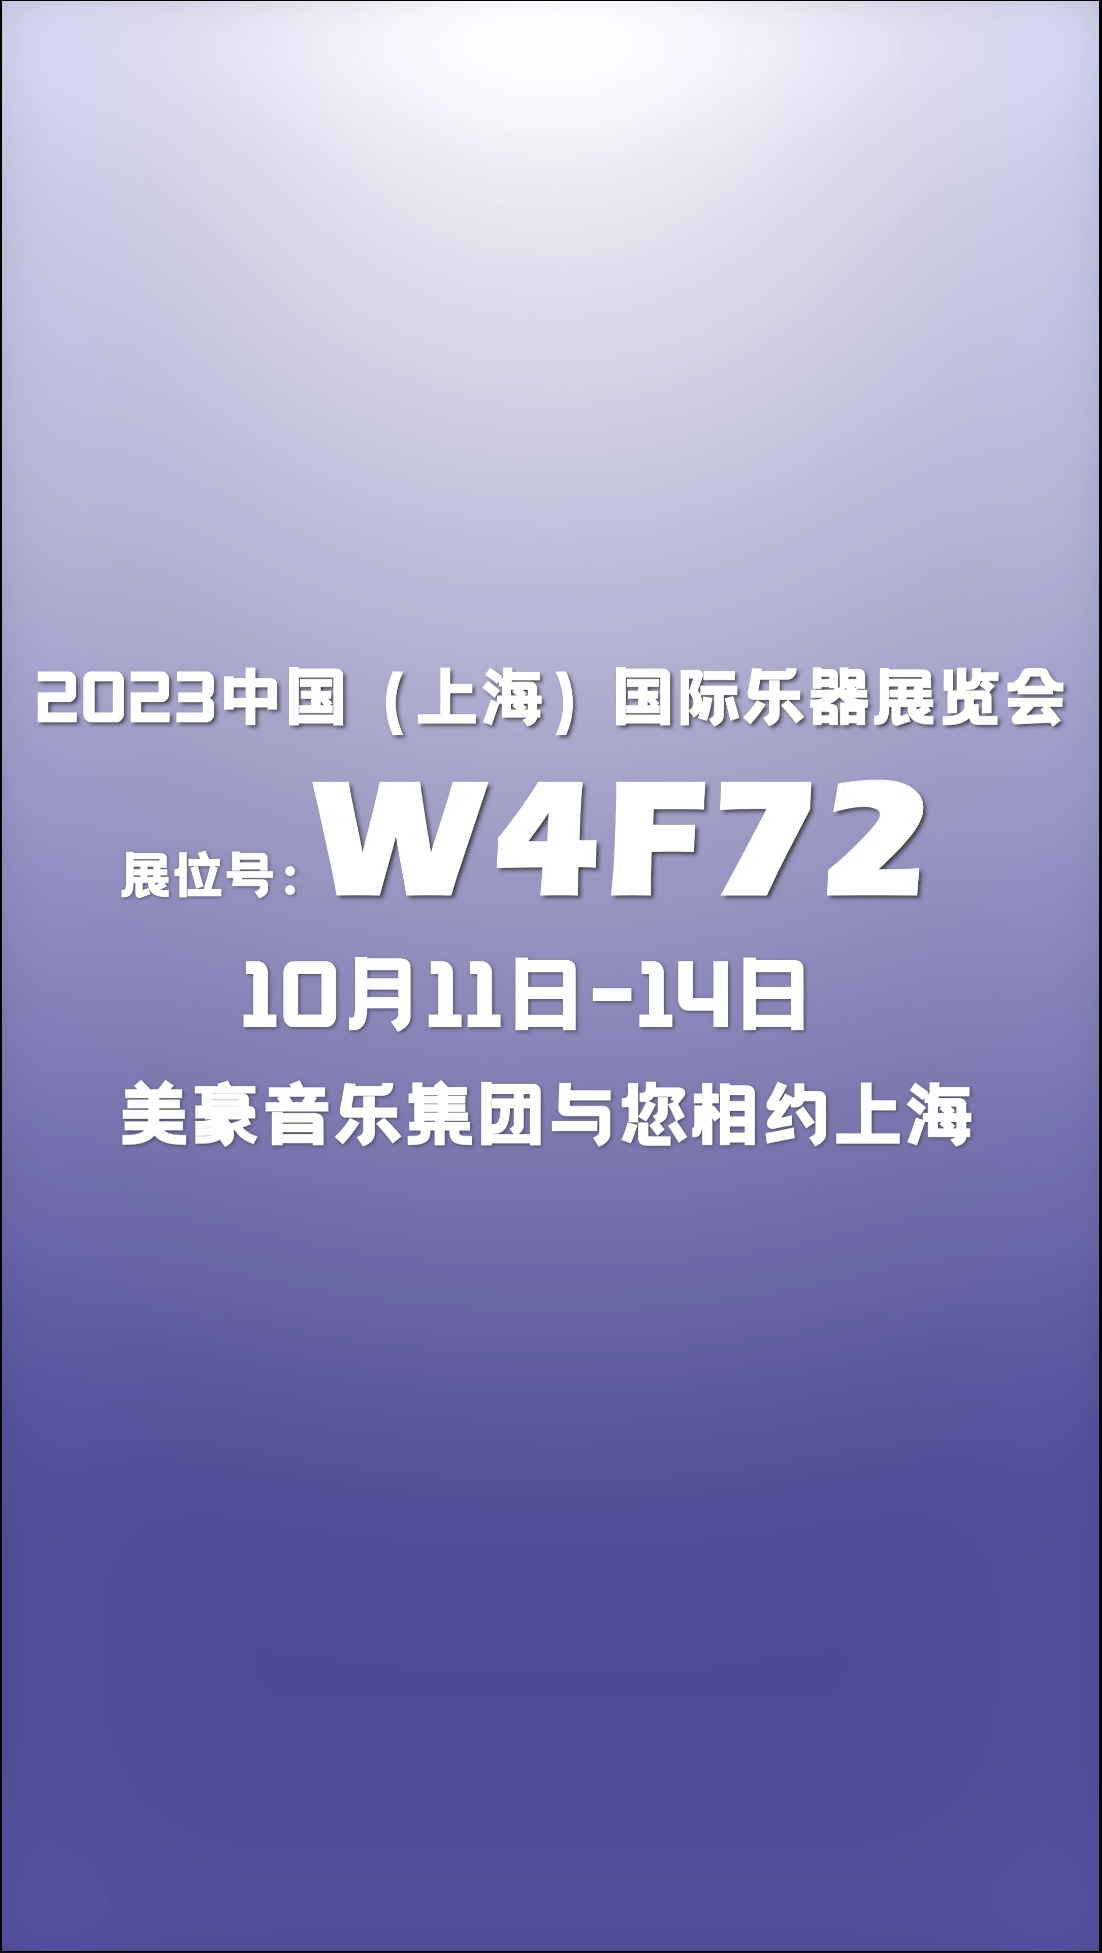 2023中国（上海）国际乐器展览会，10月11-14日，美豪音乐集团与您相约上海乐展W4F72展位